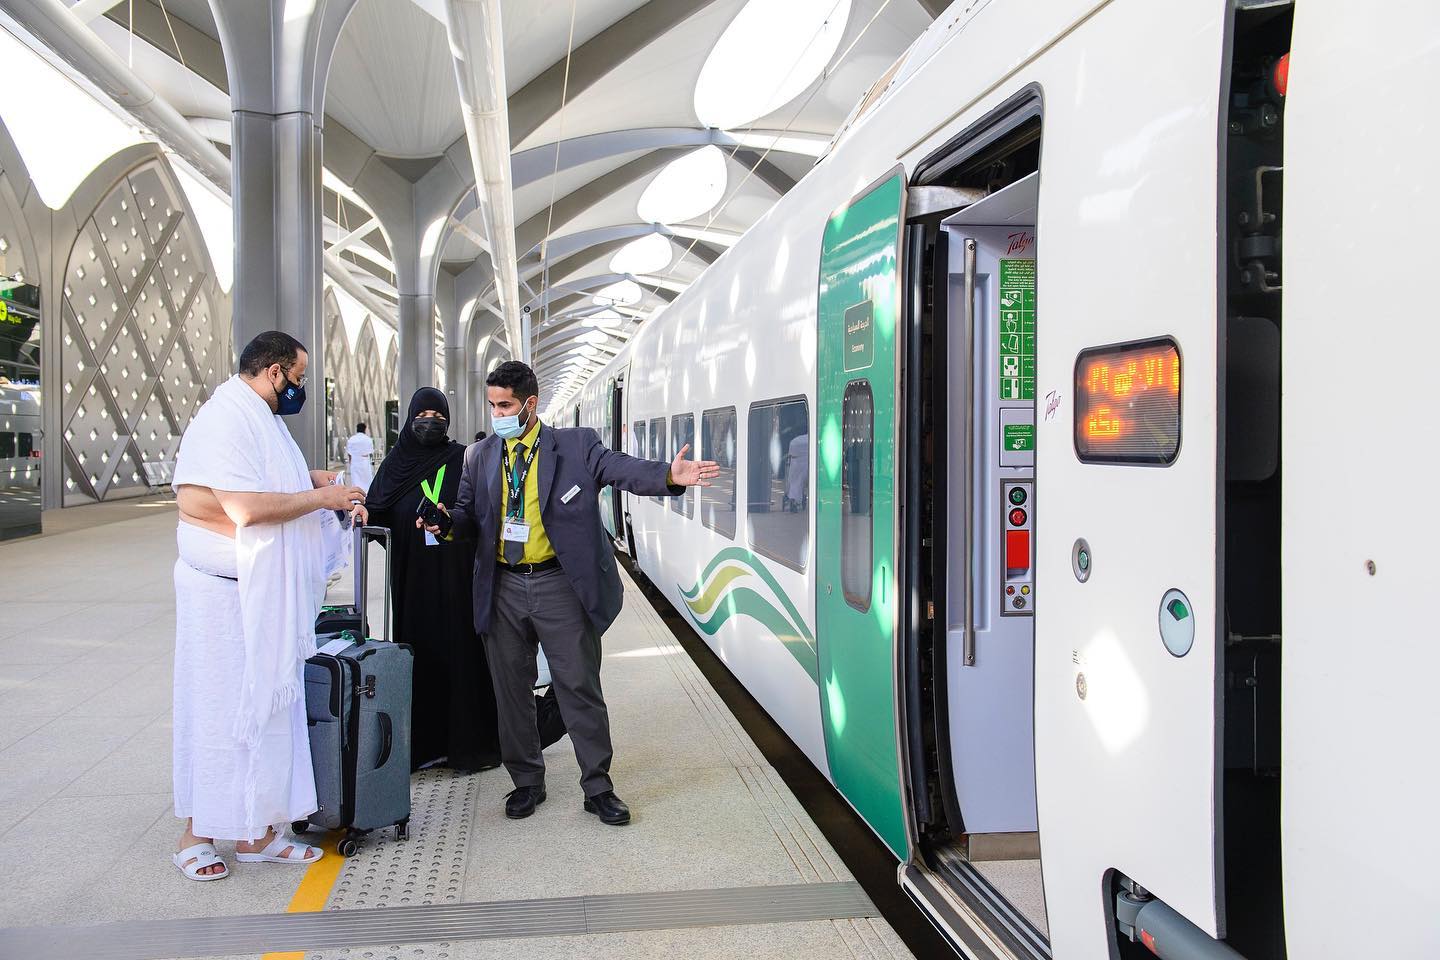 حجز تذاكر القطار السريع مكة المدينة المنورة مواعيد الرحلات وأسعار المقصورة الاقتصادية ورجال الأعمال